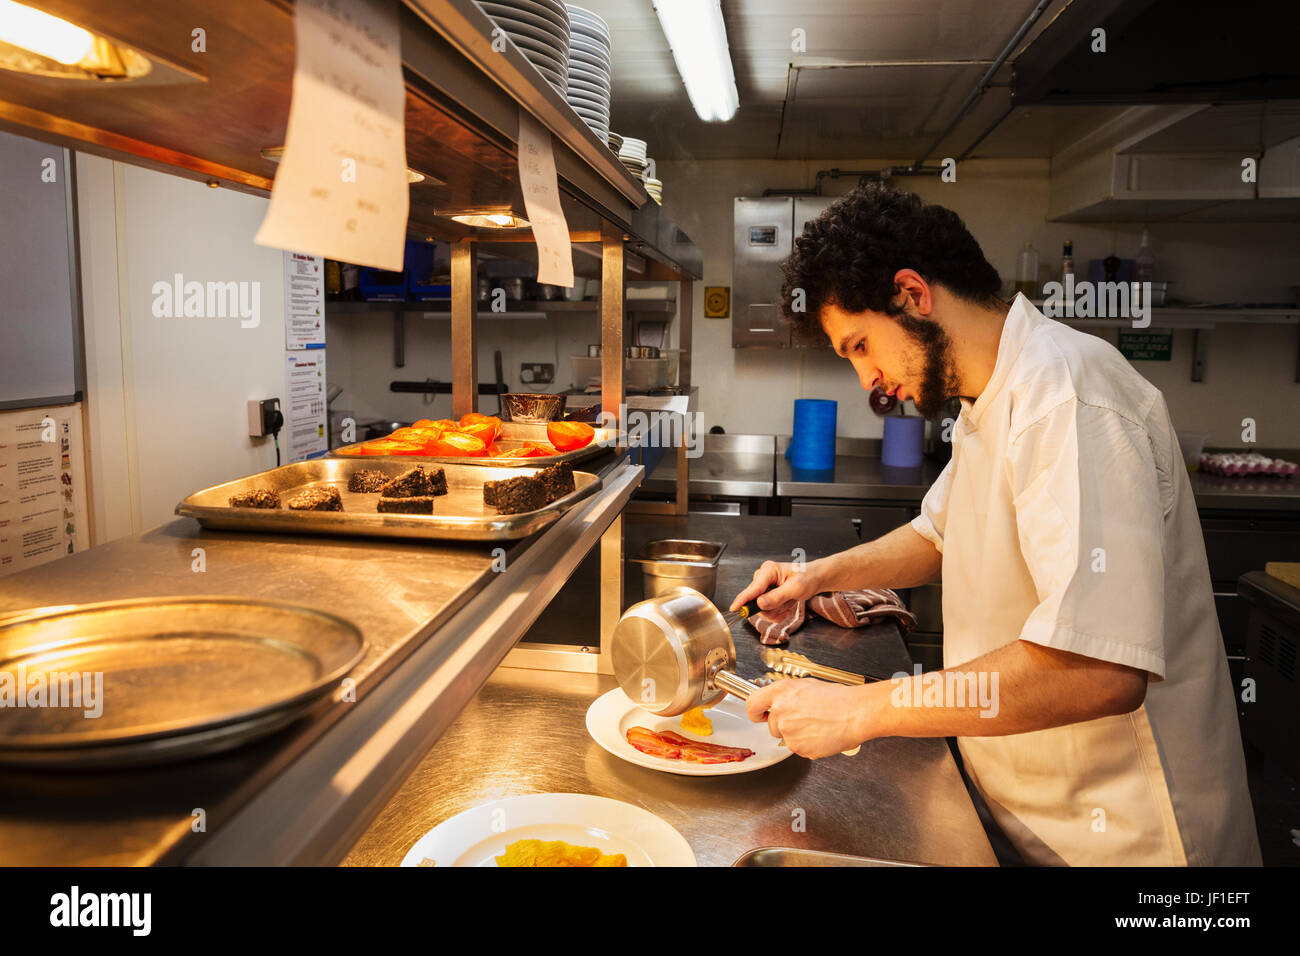 Koch in einer Küche an einem Schalter stehen, hält Topf, Plattieren Essen. Stockfoto